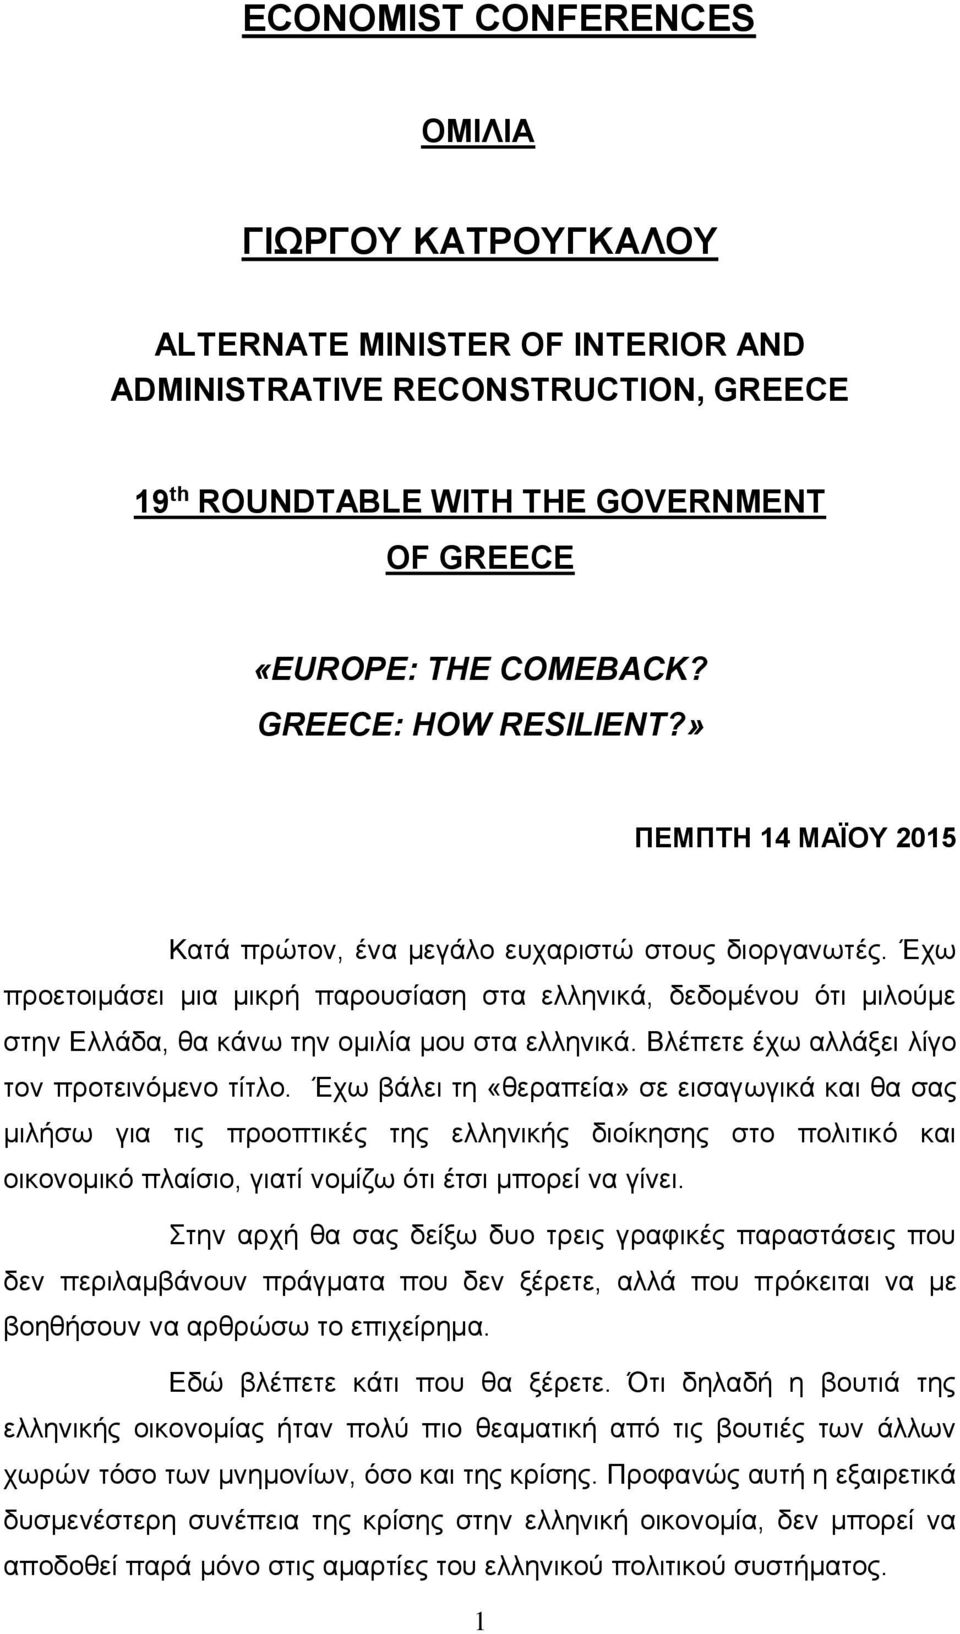 Έχω προετοιμάσει μια μικρή παρουσίαση στα ελληνικά, δεδομένου ότι μιλούμε στην Ελλάδα, θα κάνω την ομιλία μου στα ελληνικά. Βλέπετε έχω αλλάξει λίγο τον προτεινόμενο τίτλο.